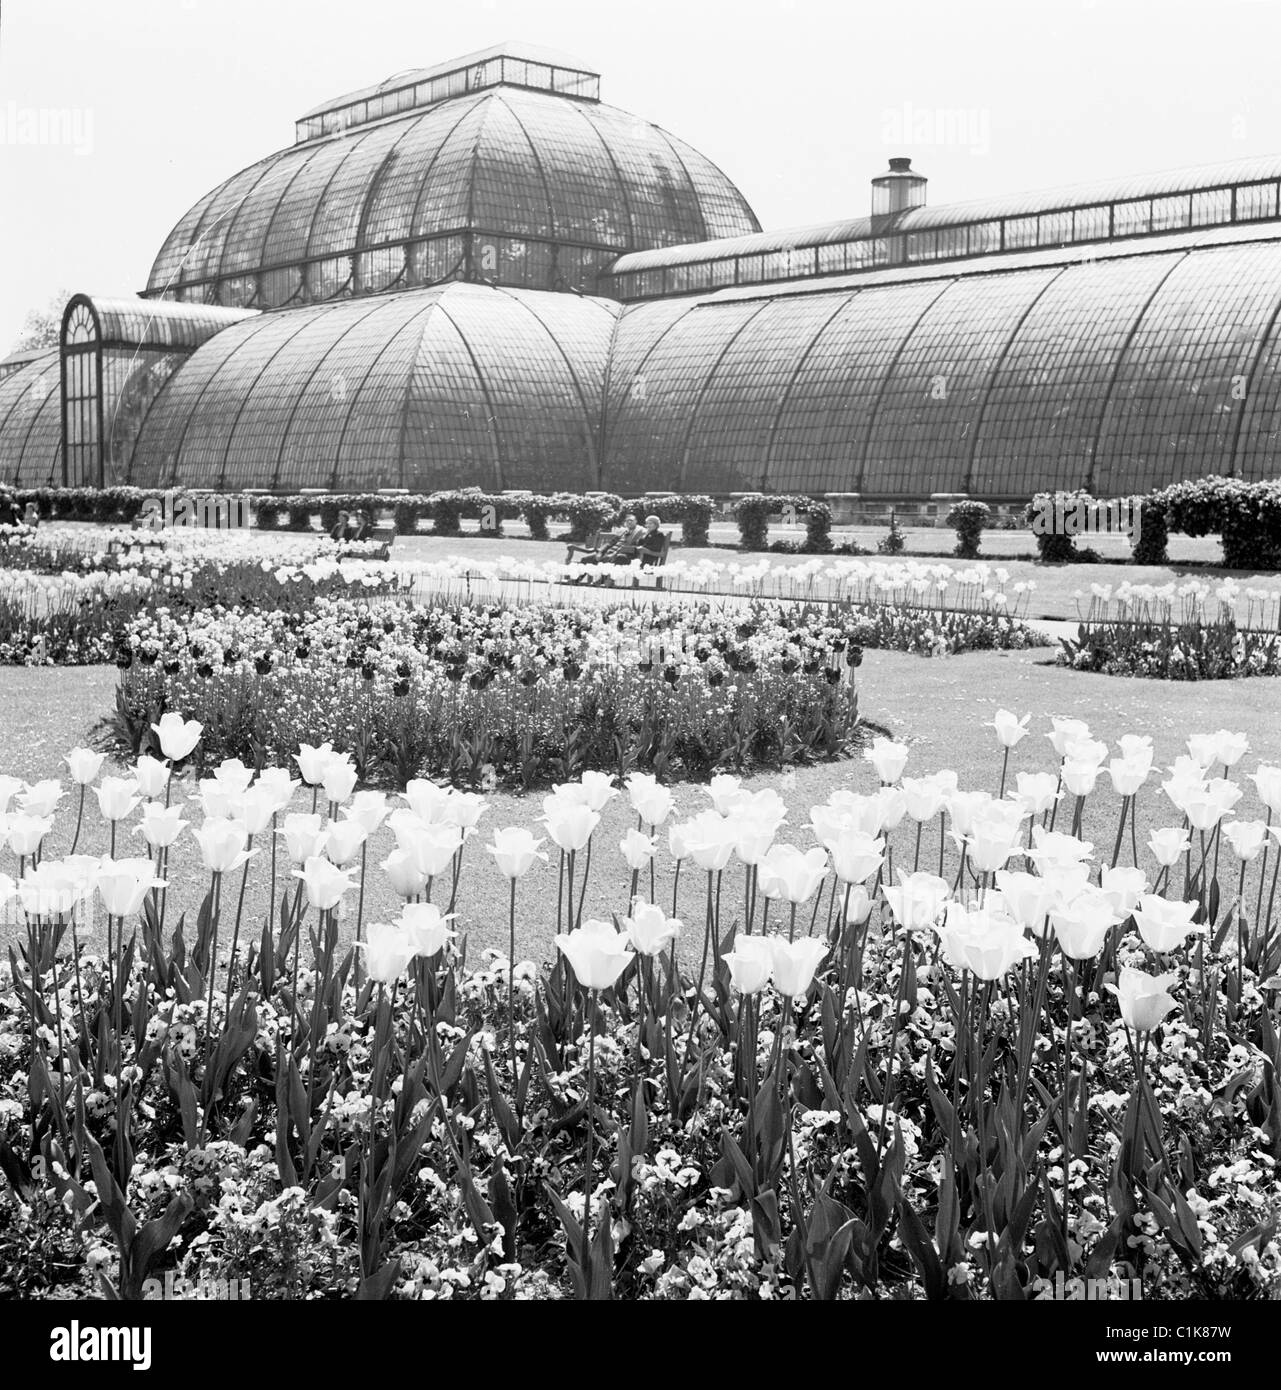 Années 1950, serre victorienne, la Palm House des Royal Botanic Gardens à Kew, Richmond upon Thames, construite en 1844 et conçue par Decimus Burton. Banque D'Images